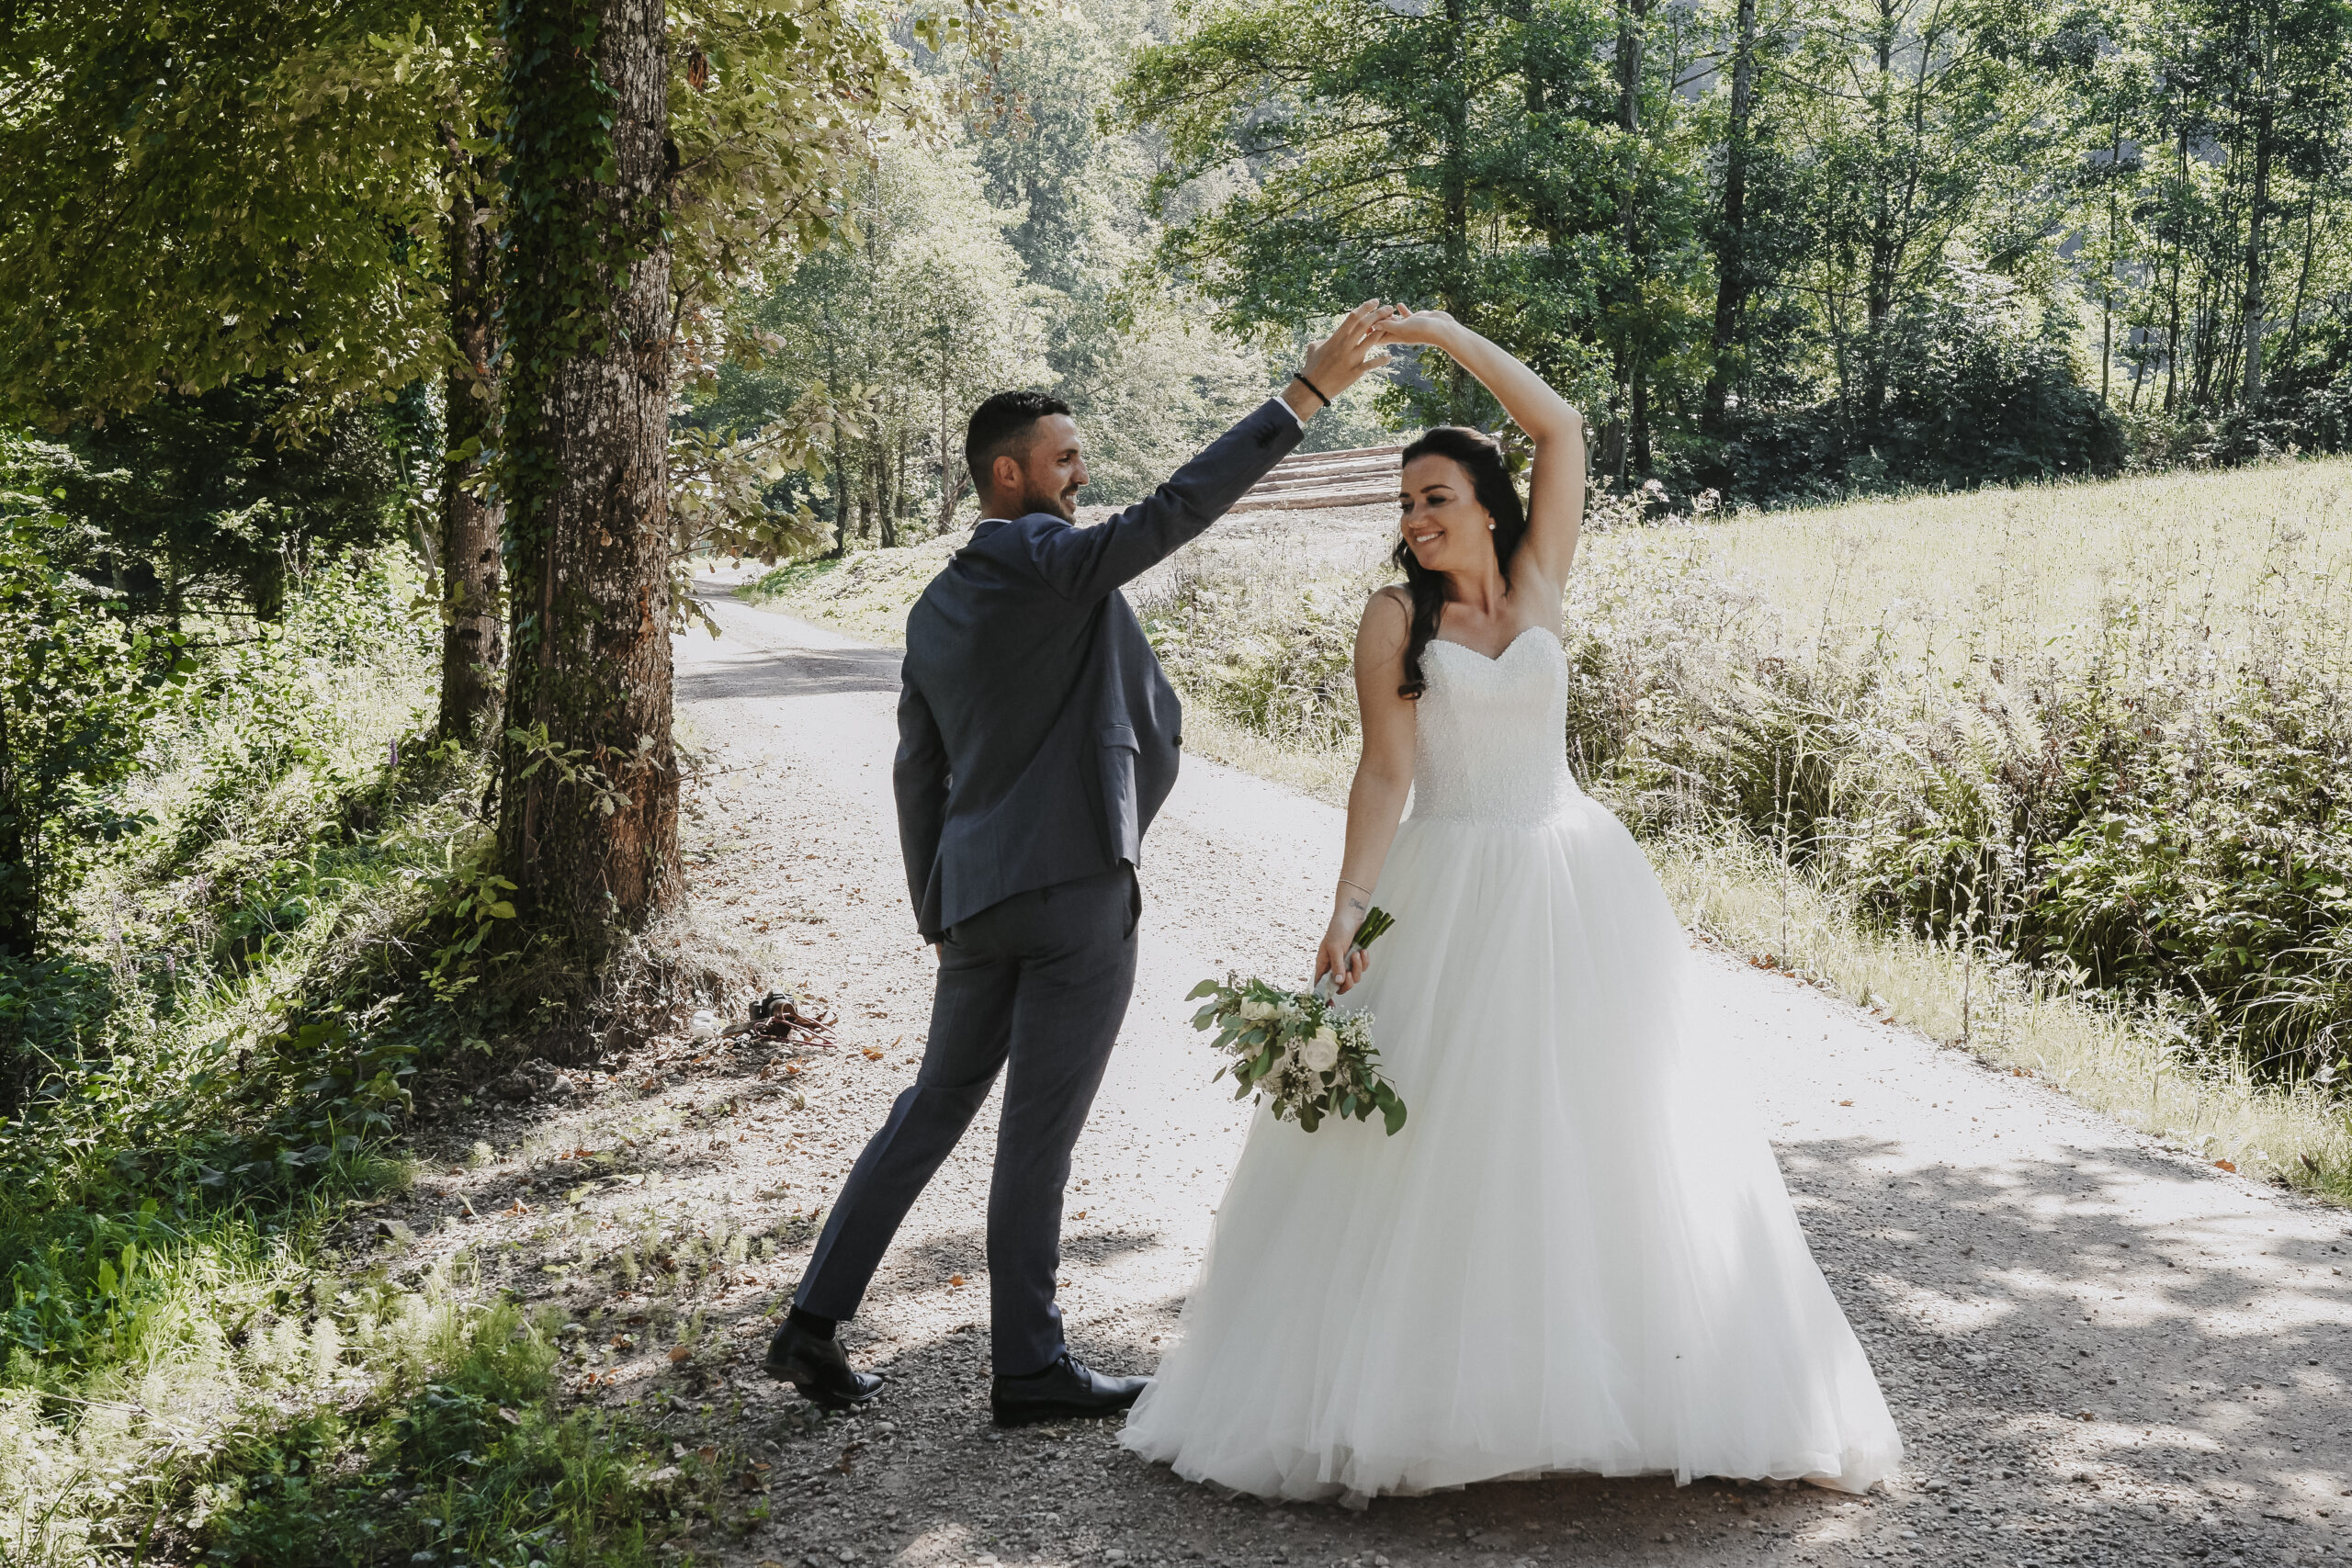 Frau und Mann im Hochzeitsoutfit am Tanzen auf einem Feldweg umgeben von Bäumen.